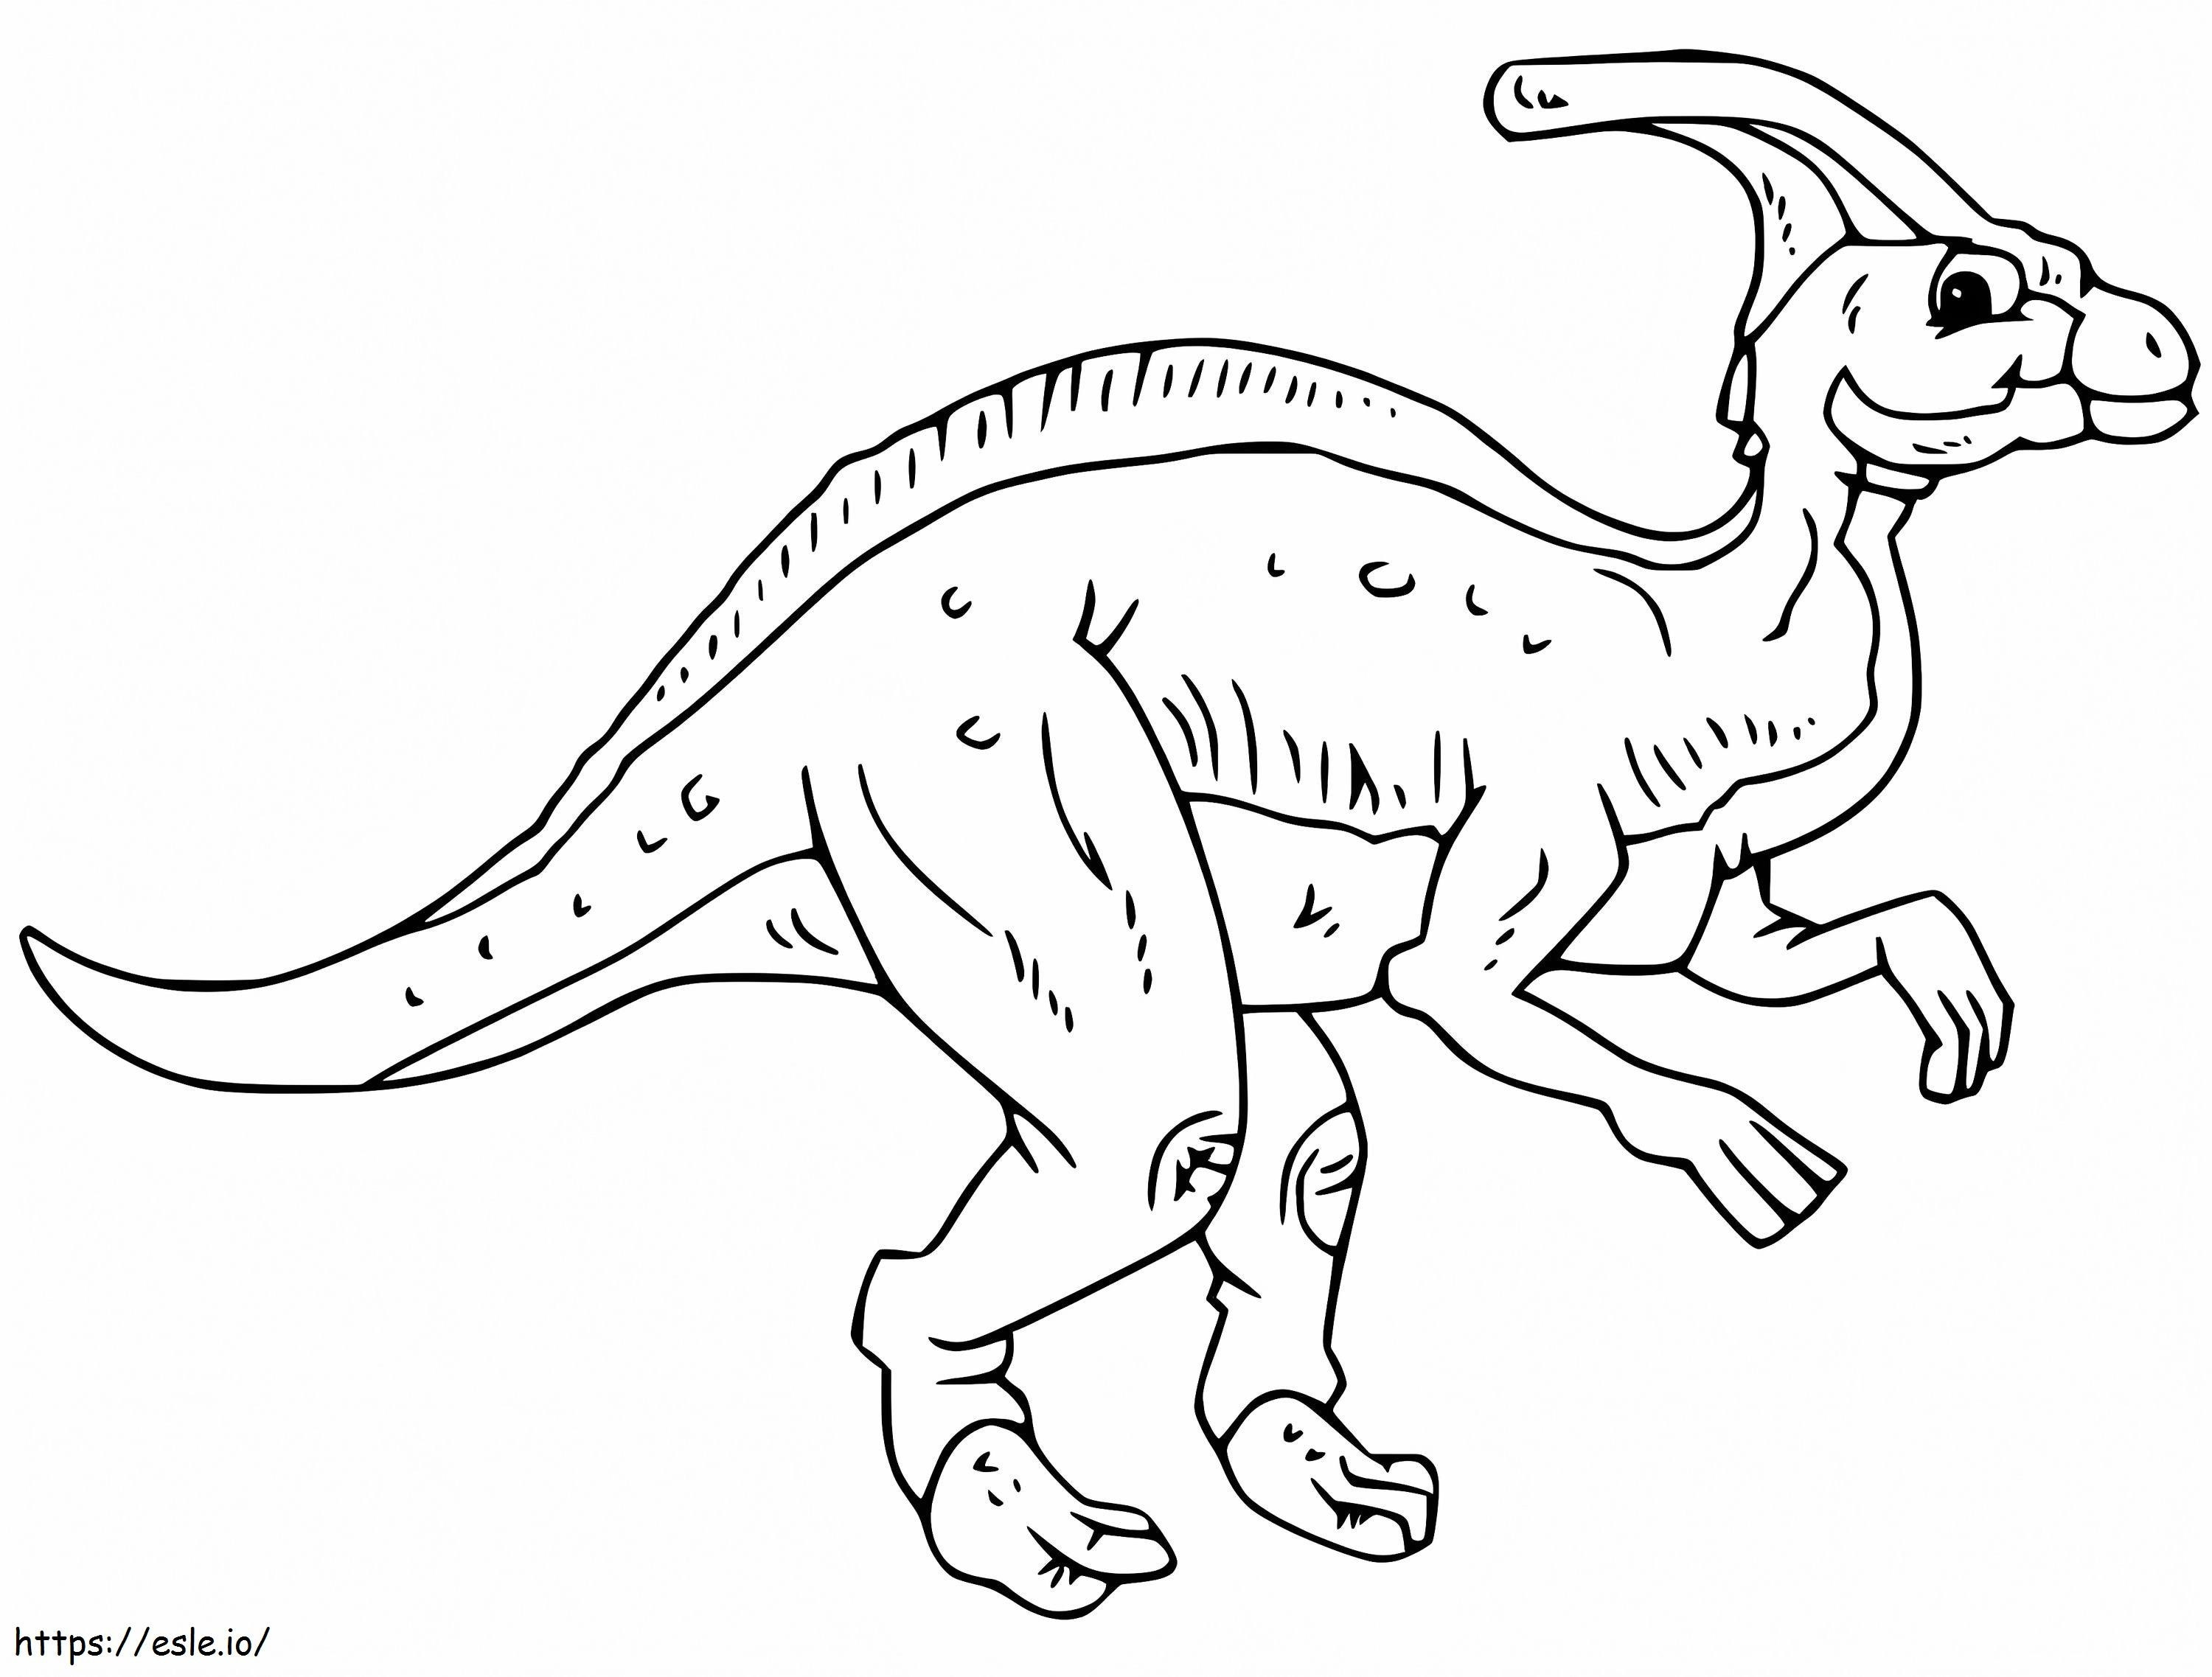 Öreg Parasaurolophus kifestő